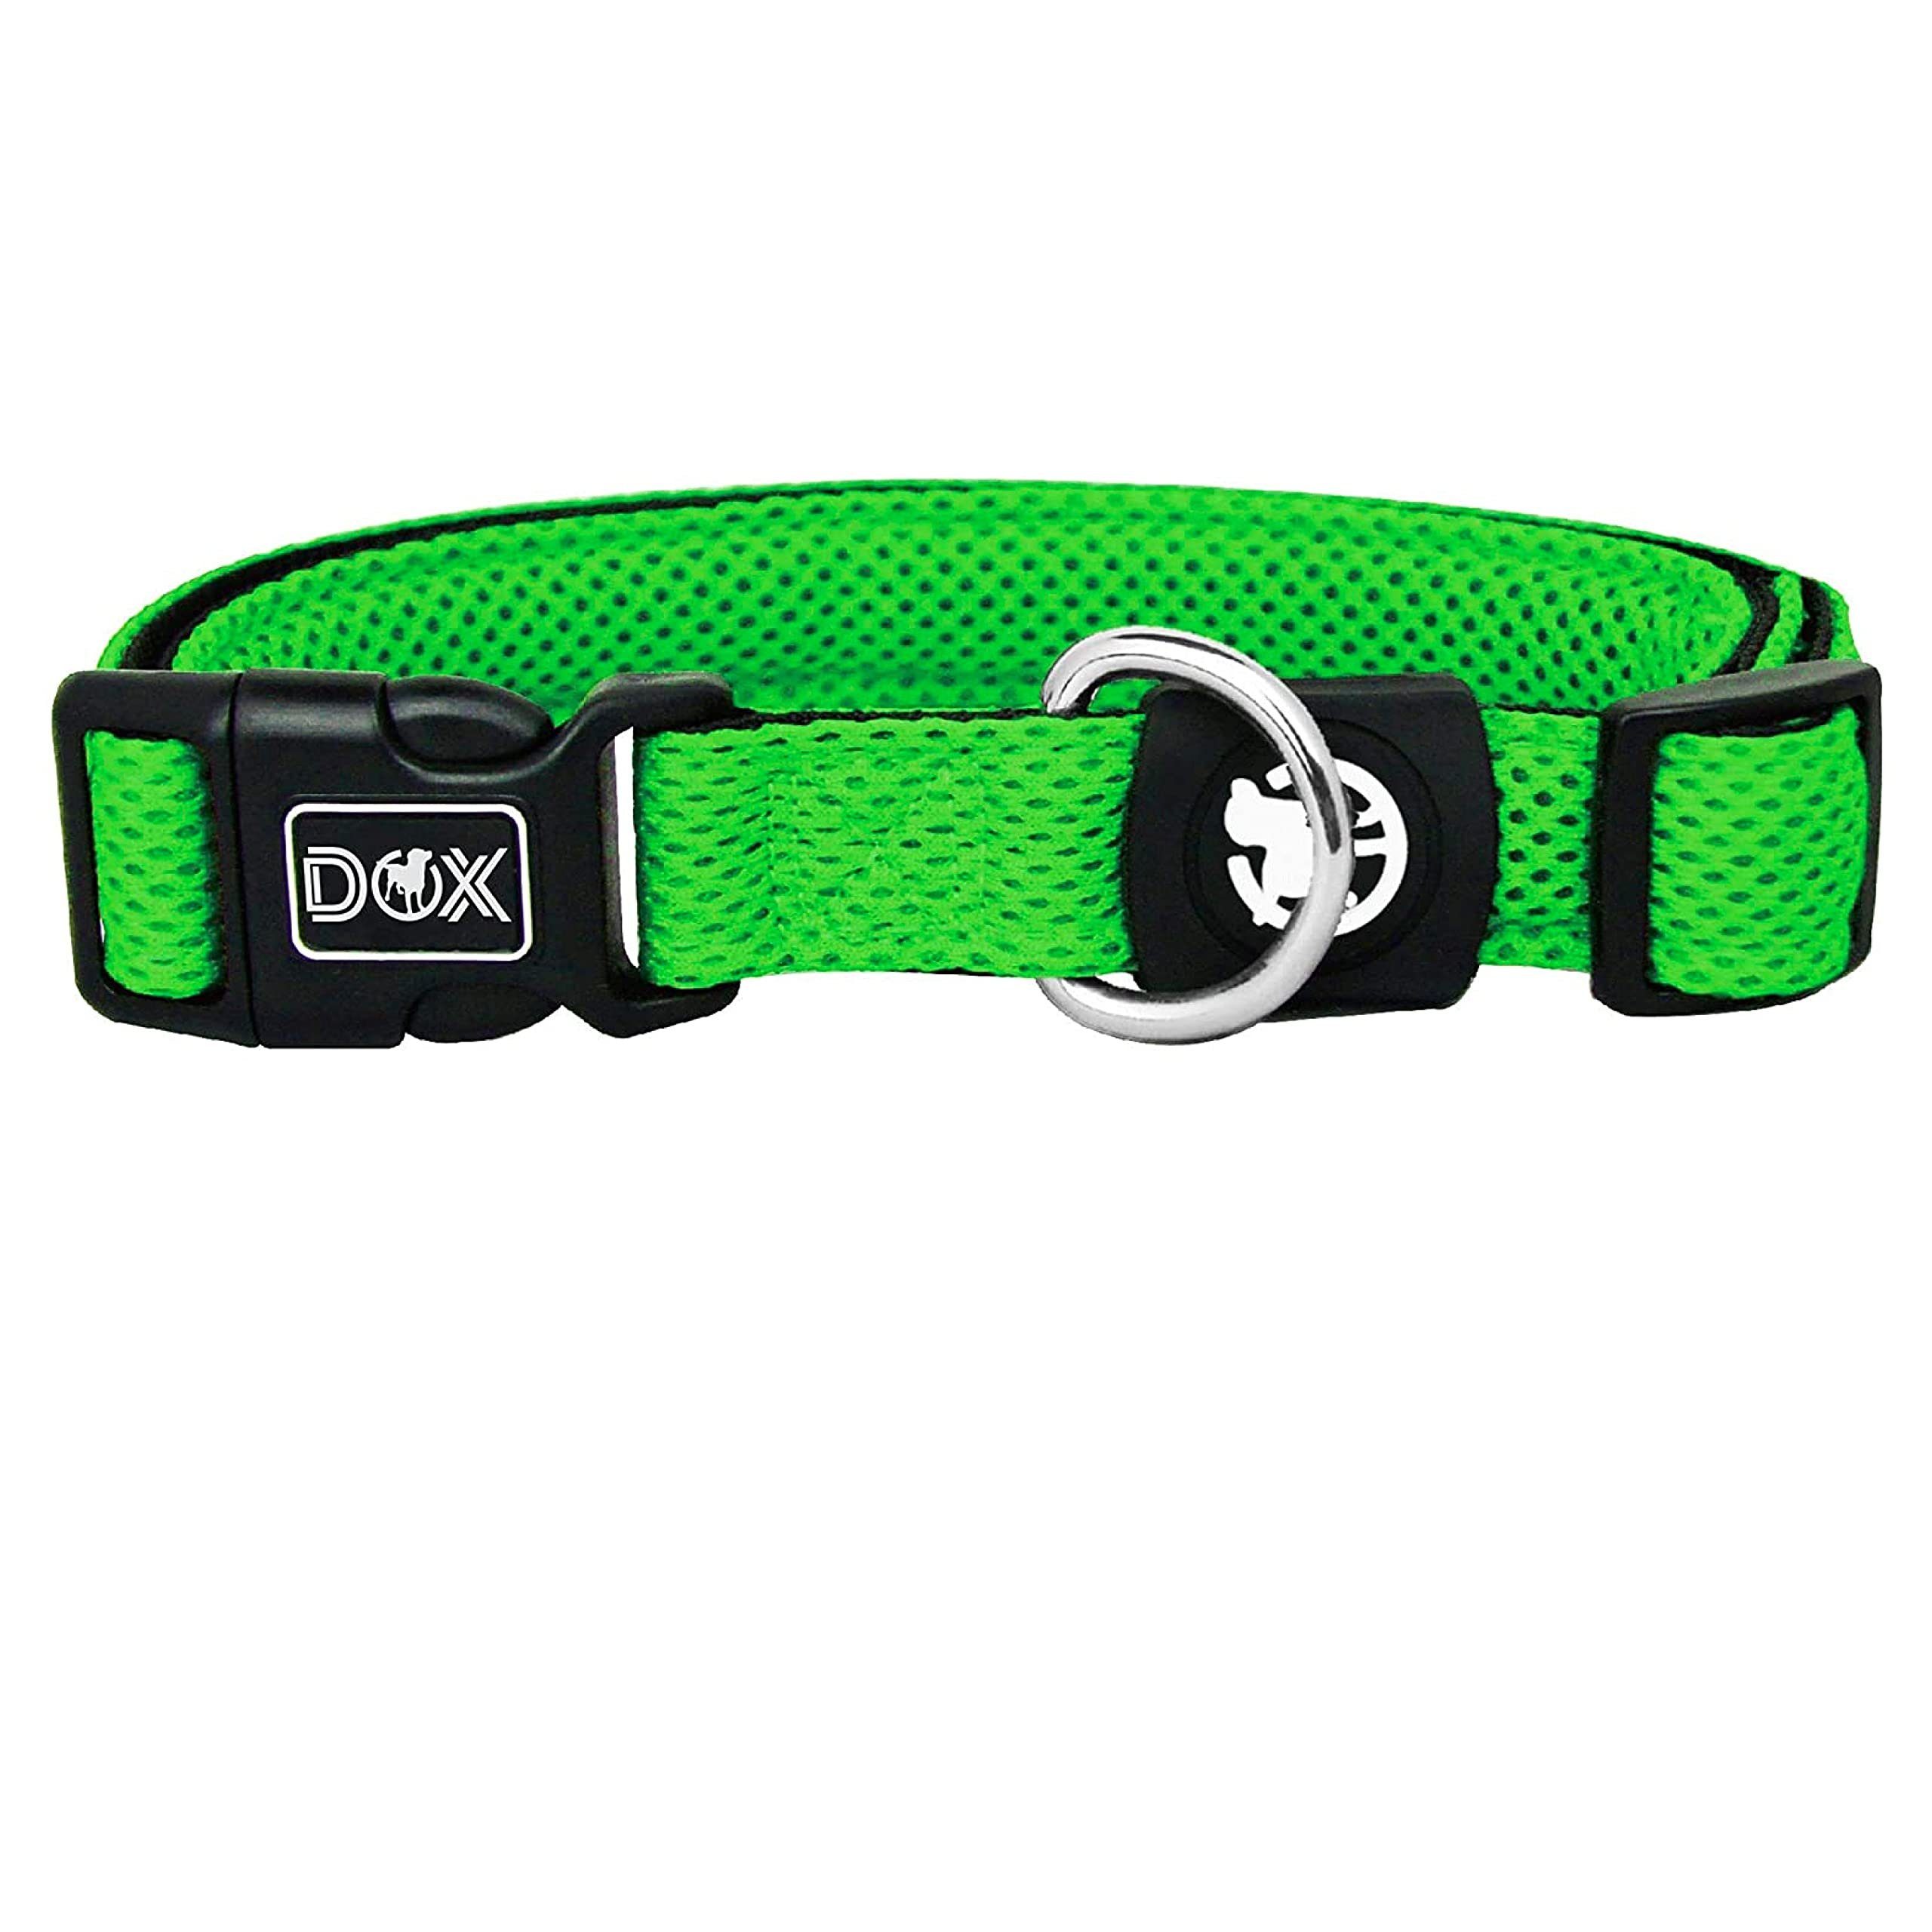 DDOXX Hunde-Geschirr Hundehalsband Air Mesh, verstellbar, gepolstert, Grün S – 2,0 X 27-37 Cm Gewebe